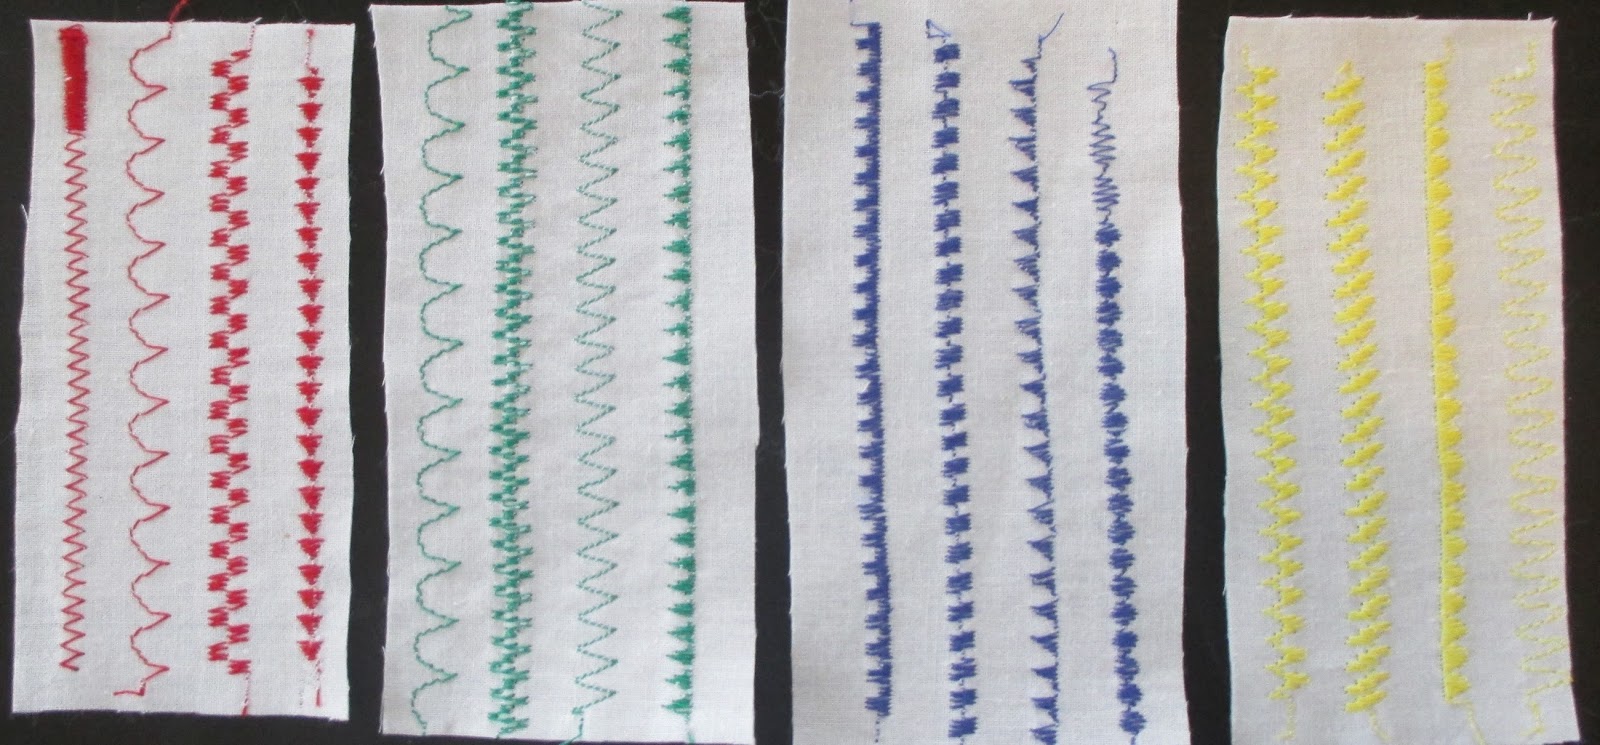 Automatic Stitch Patterning